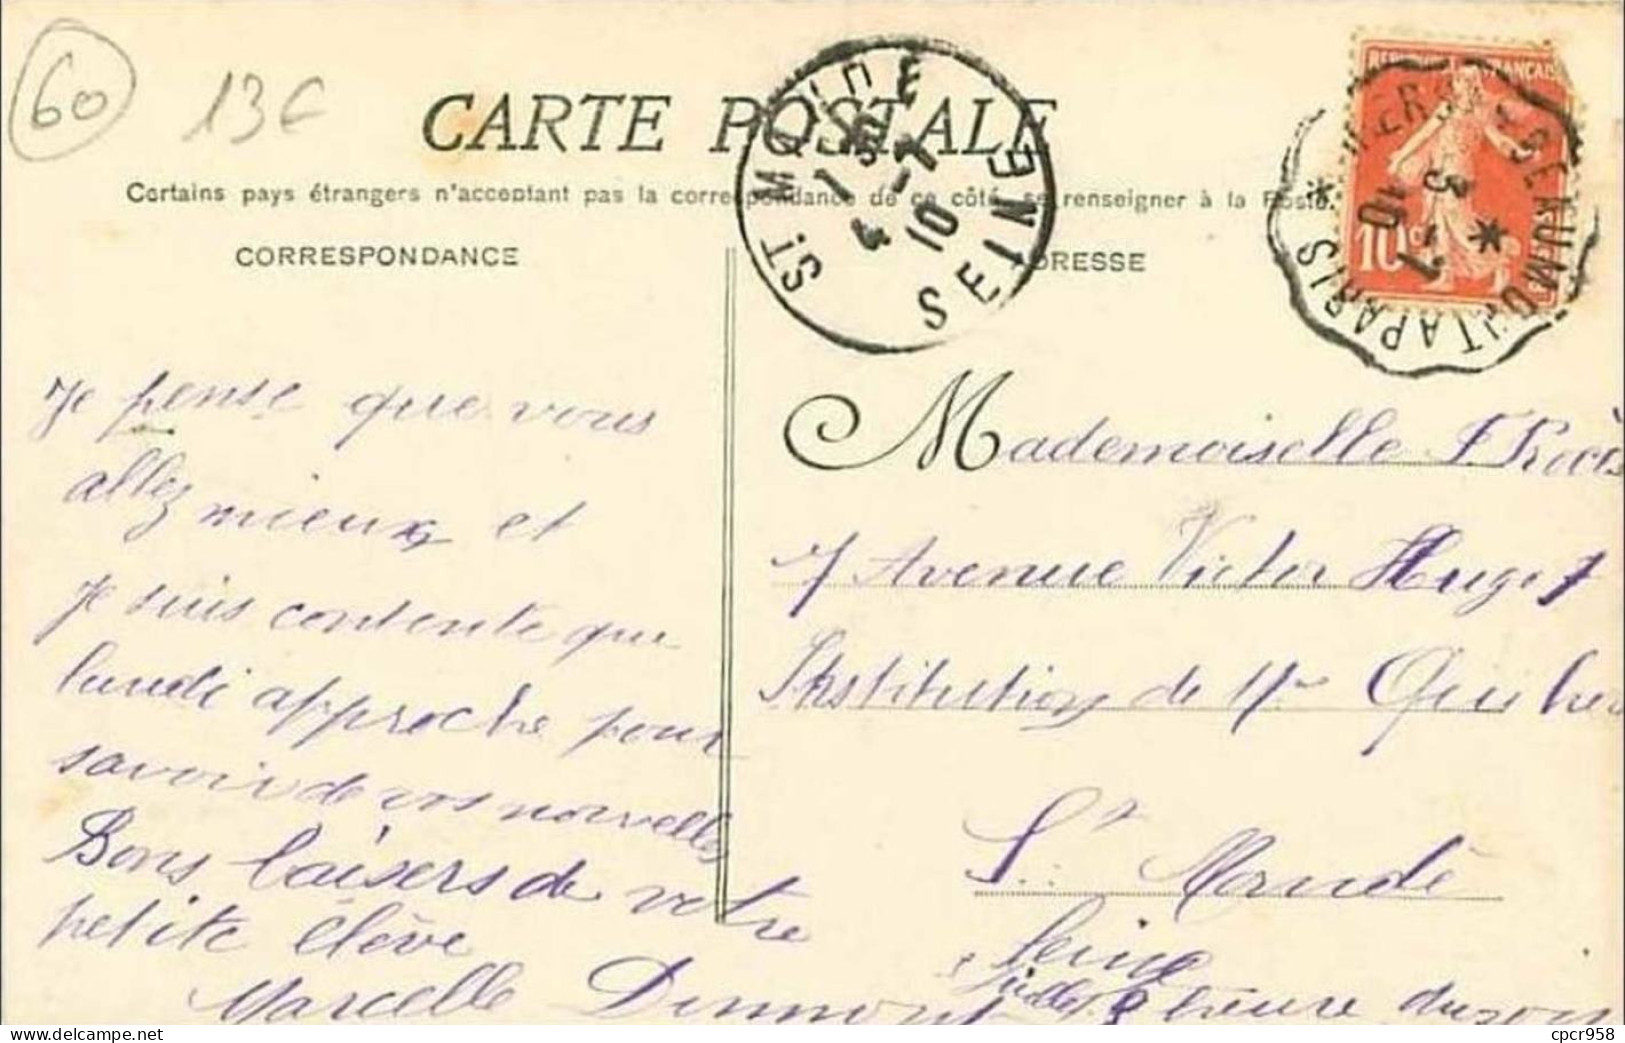 60.BORAN.L'ECLUSE.LE CHENAL.CRUE DE L'OISE.5 MARS 1910 - Boran-sur-Oise